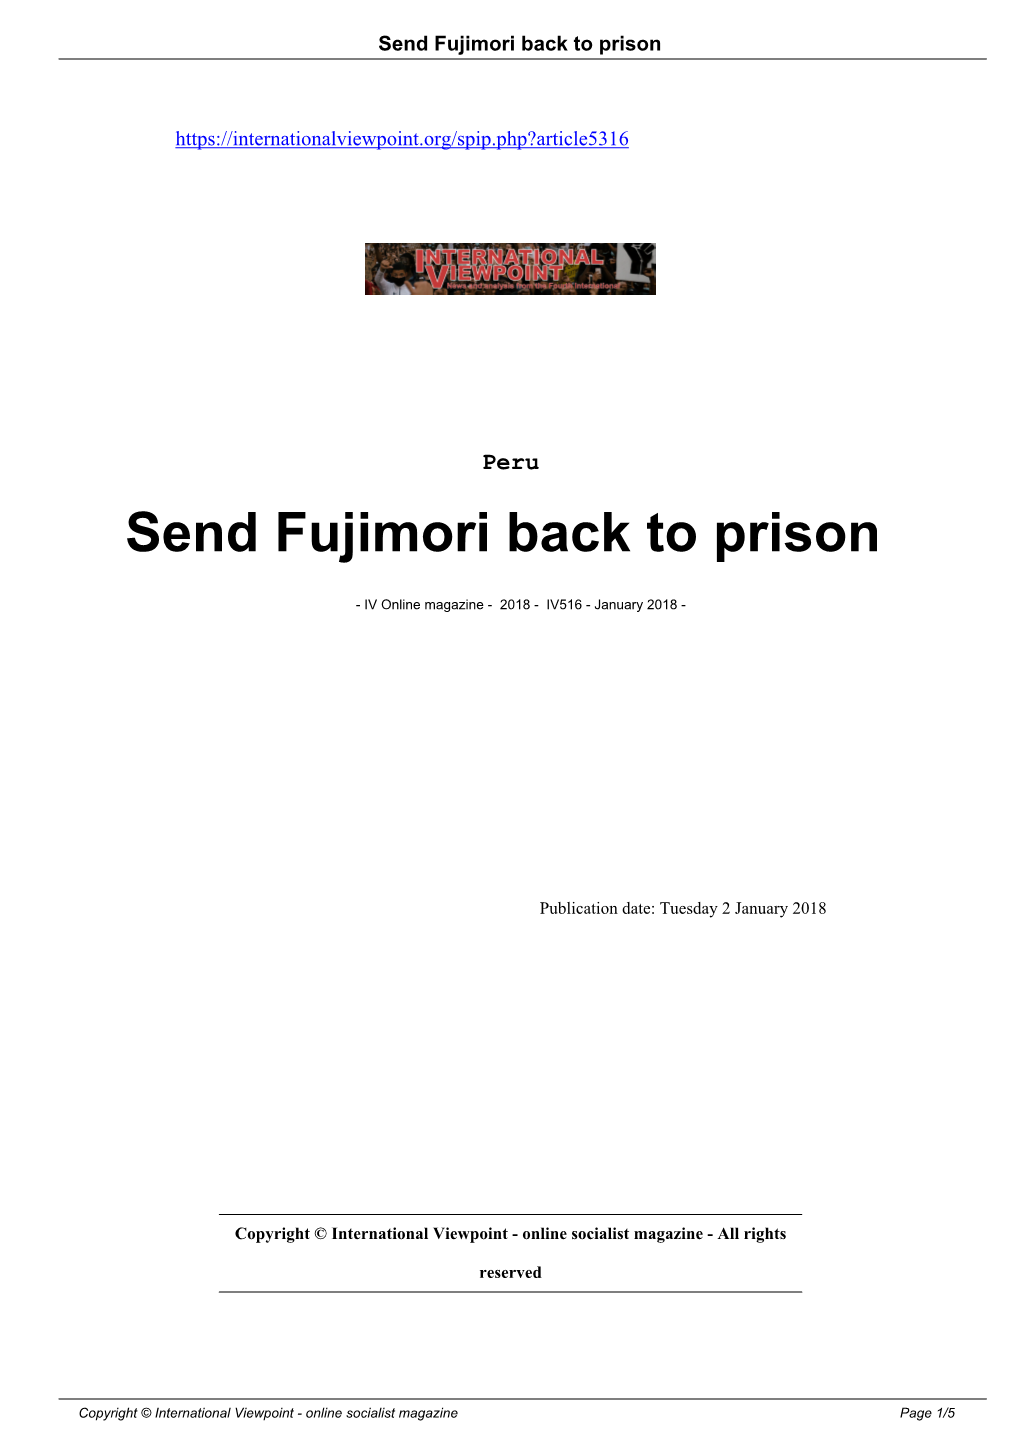 Send Fujimori Back to Prison